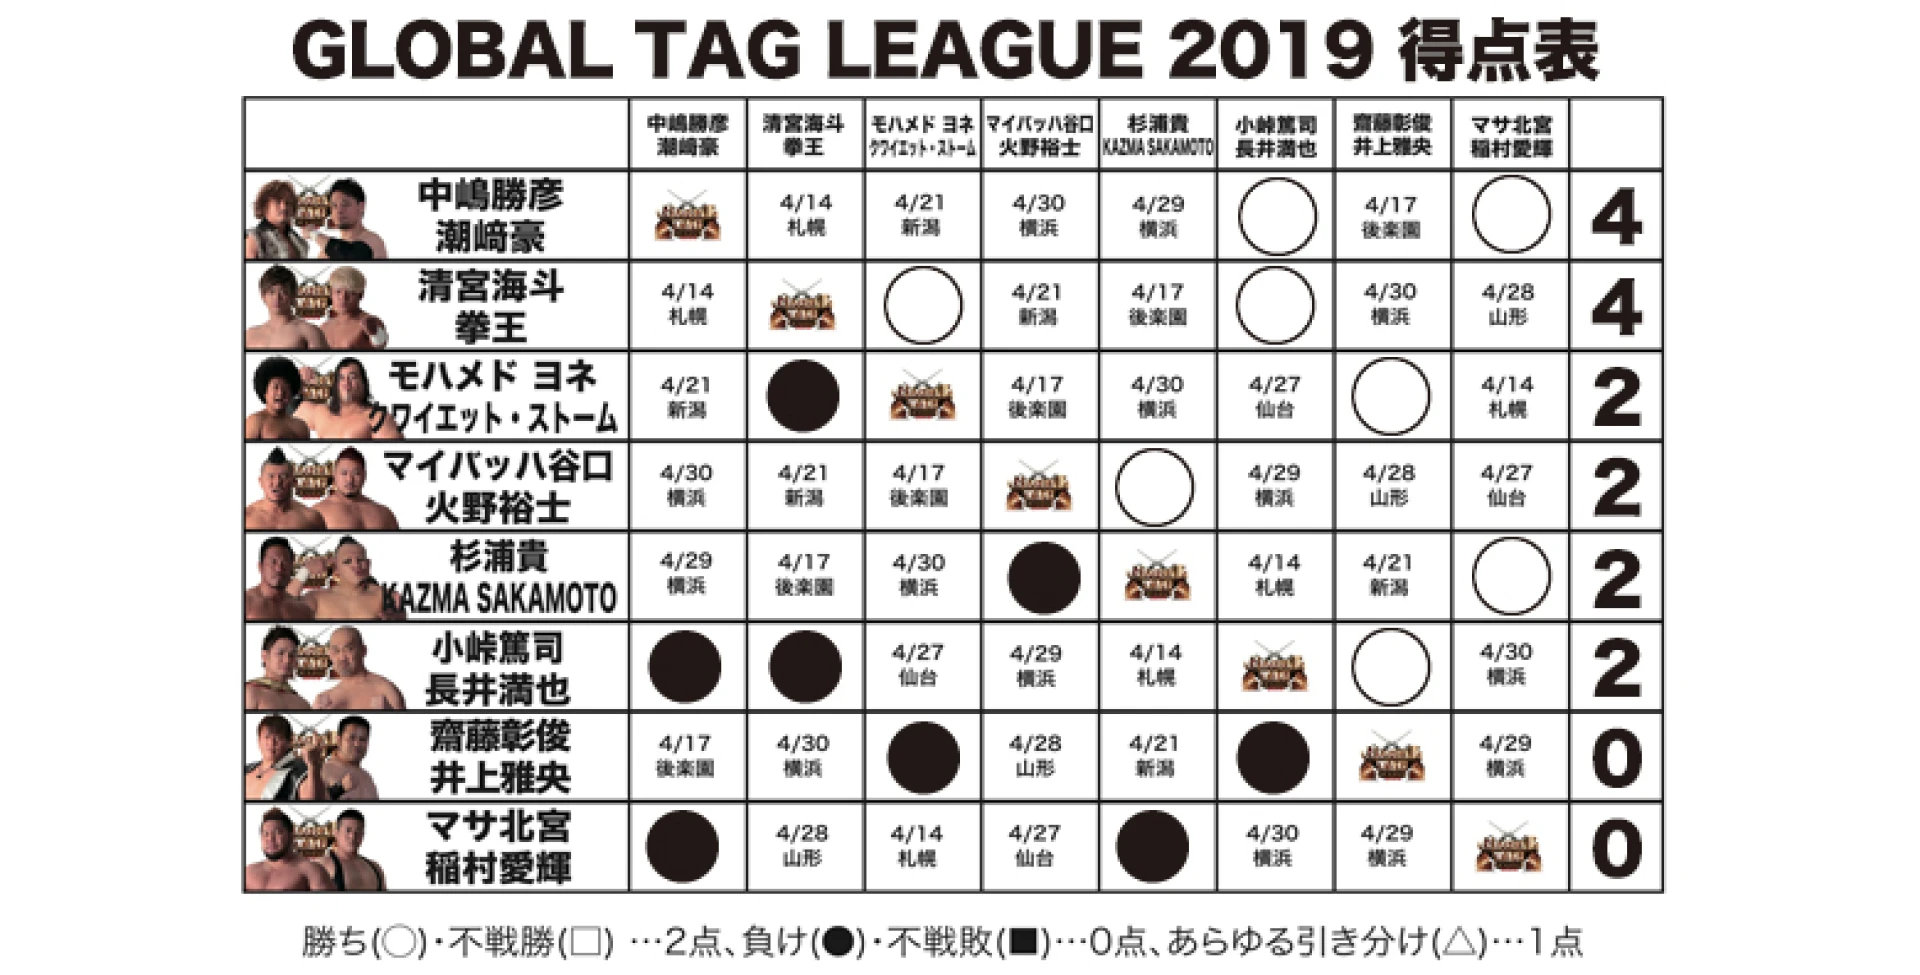 【4.13札幌大会終了時の得点状況】『GLOBAL TAG LEAGUE 2019』得点表